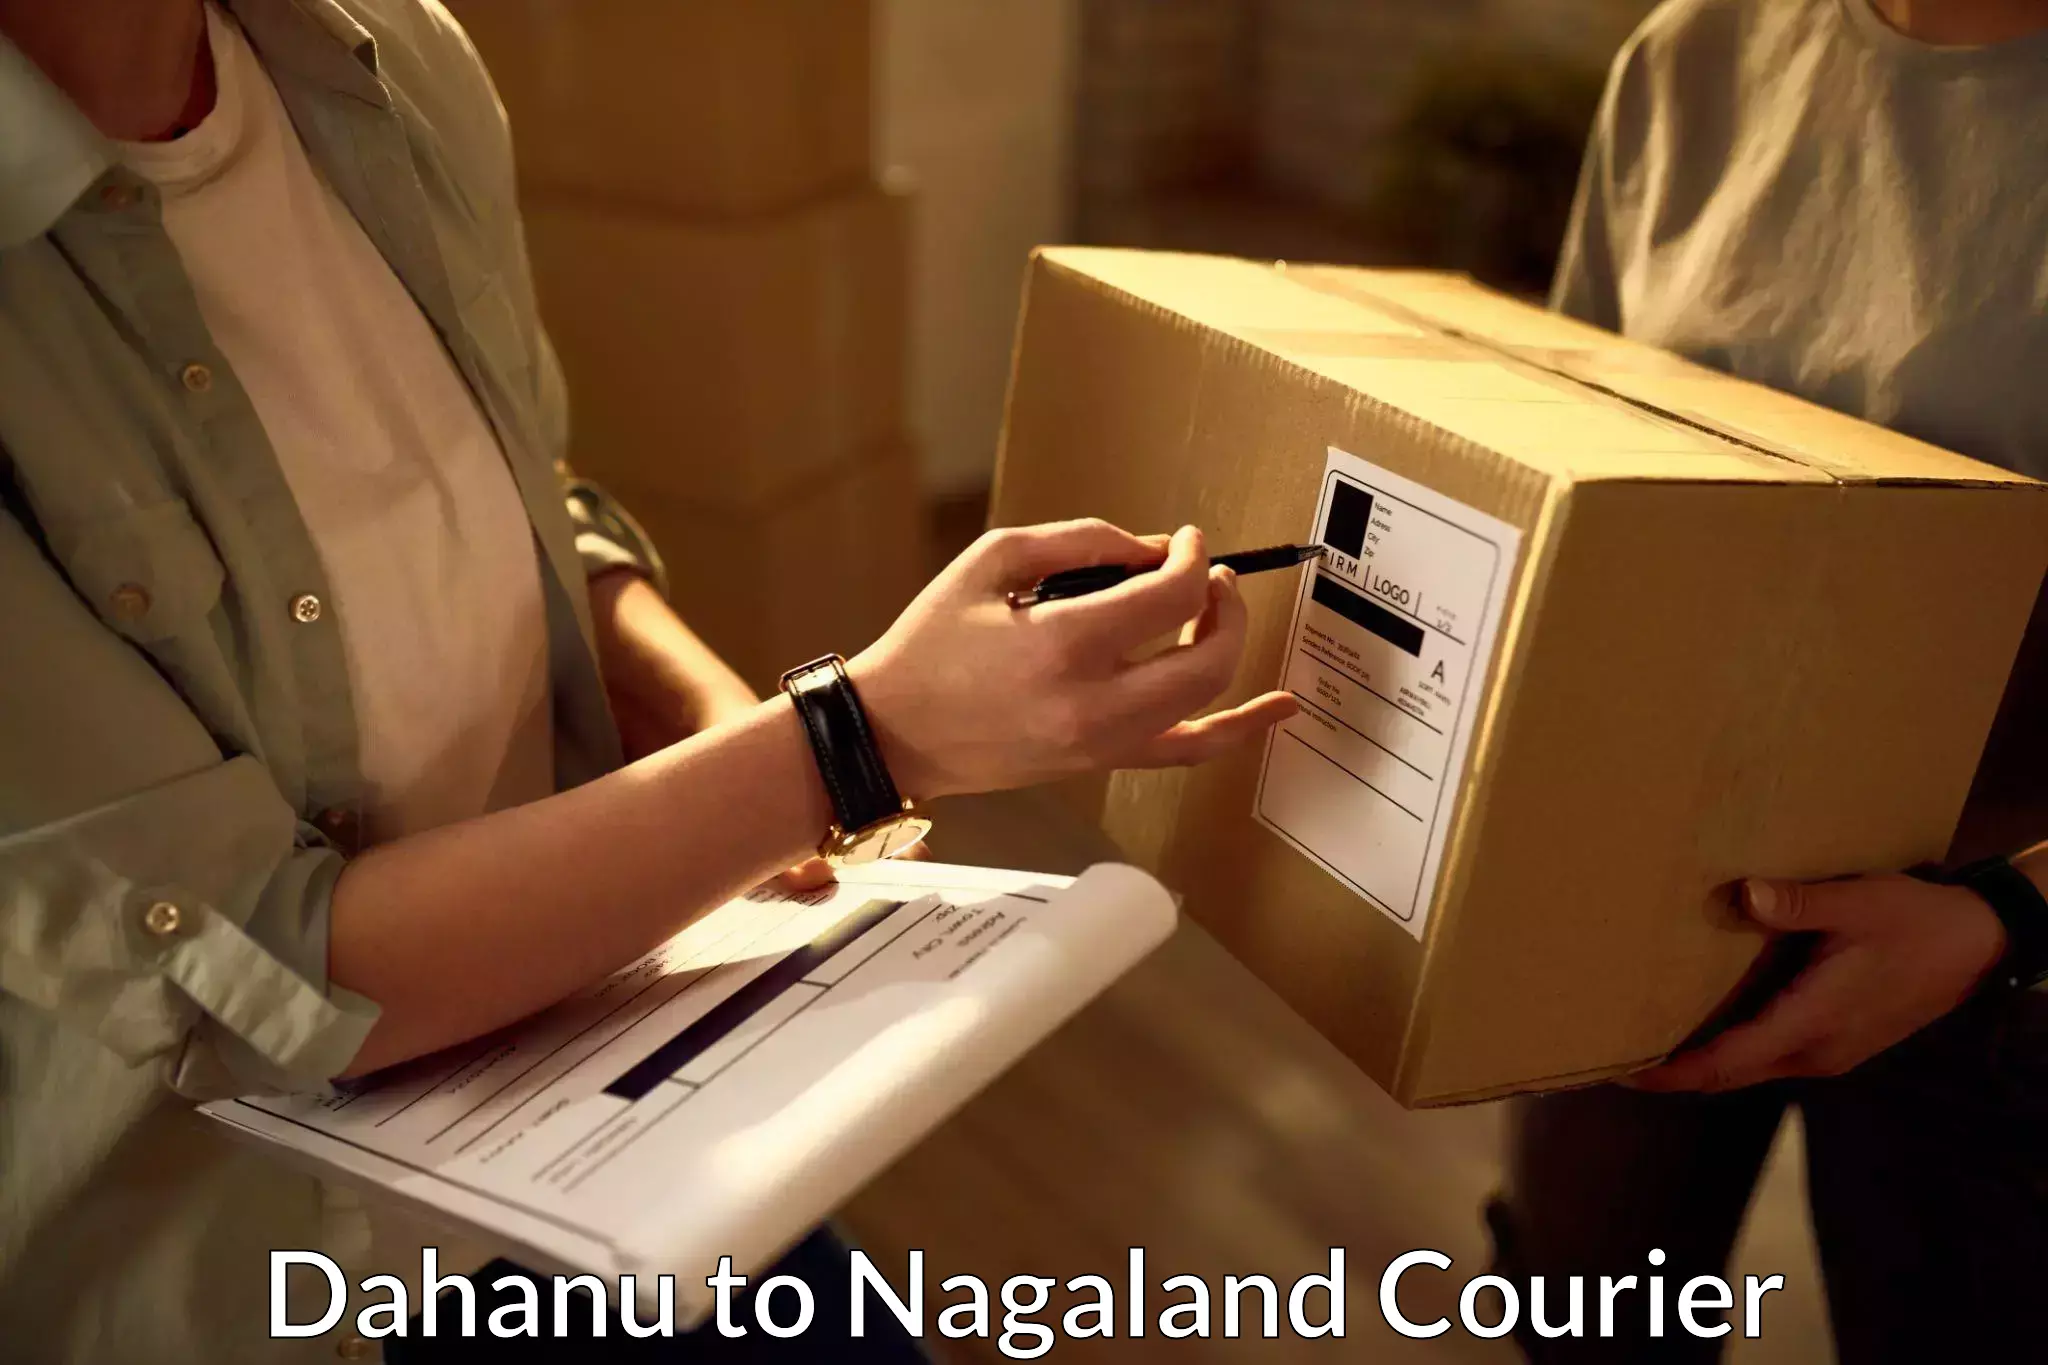 High-performance logistics Dahanu to Nagaland